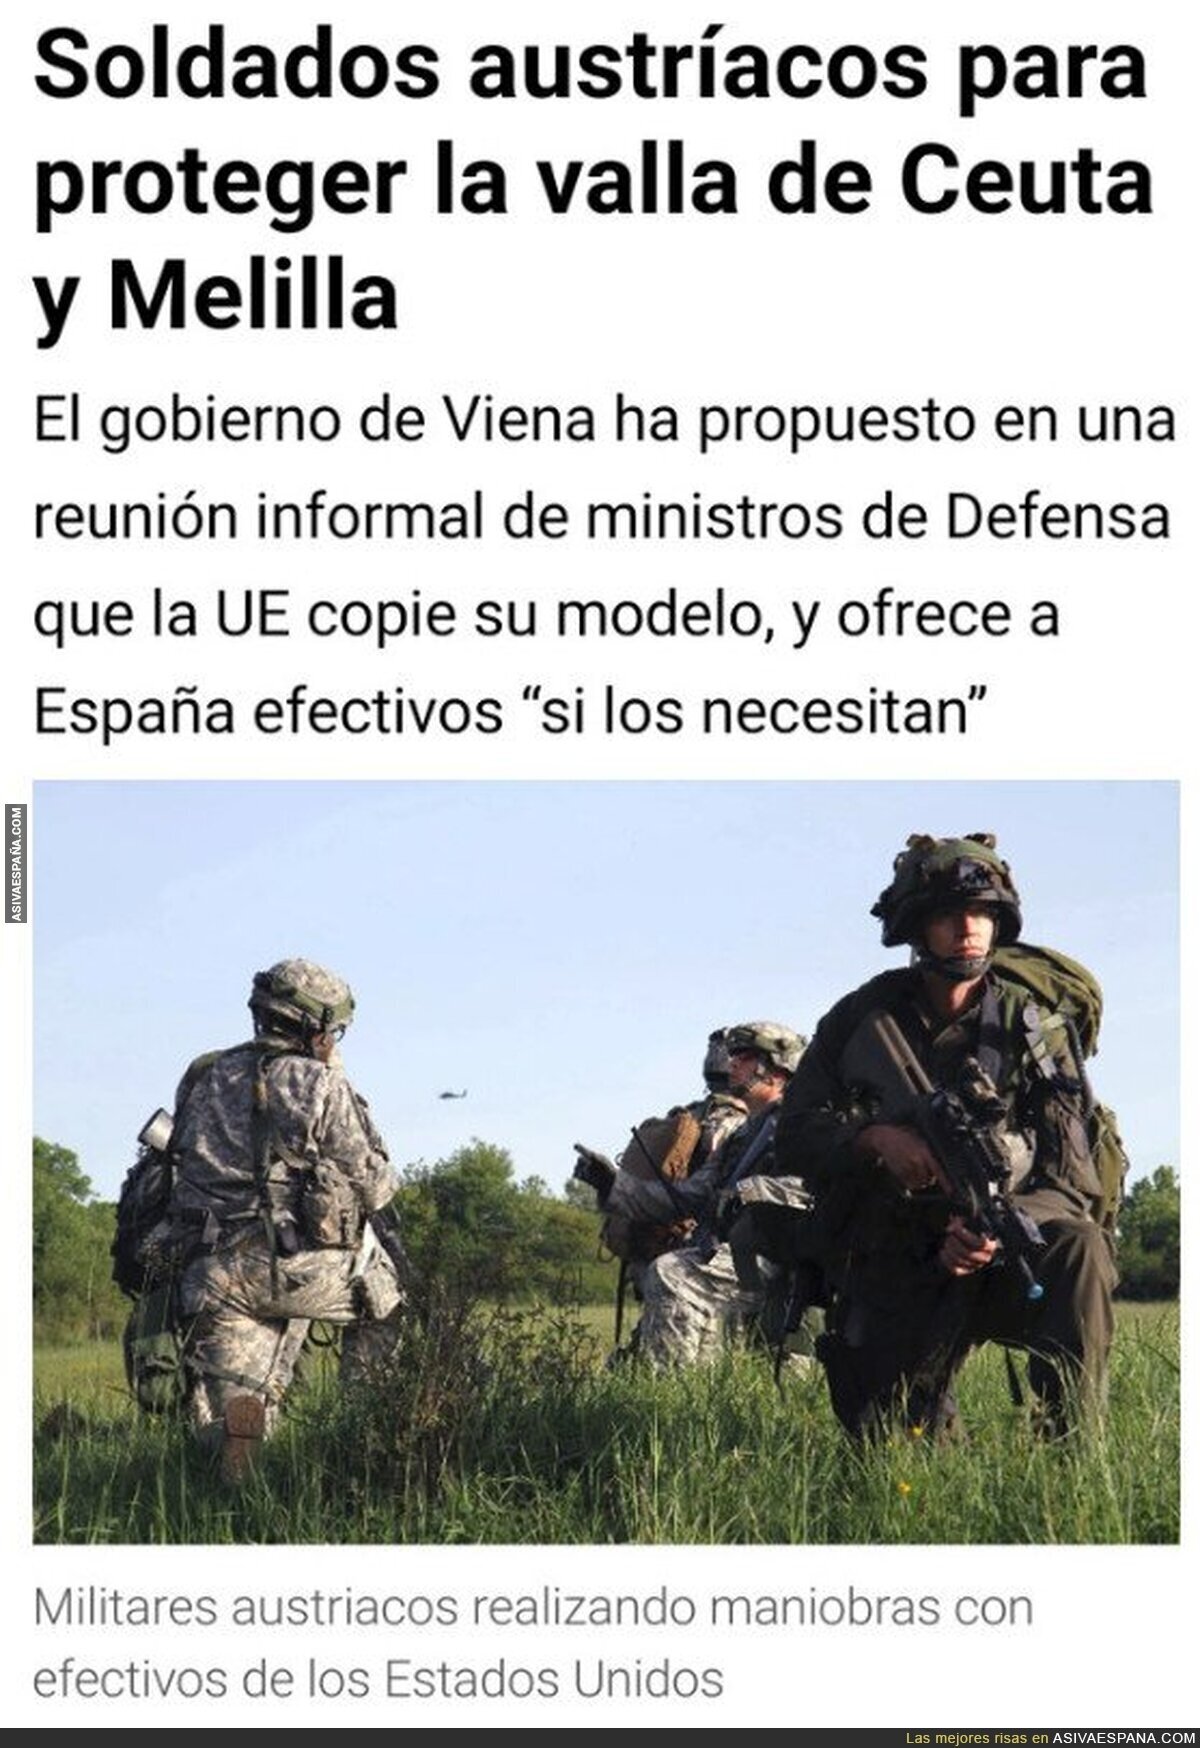 Por fin alguien se ofrece a controlar el desmadre de Ceuta  y Melilla, y no es precisamente nuestro ineficiente gobierno